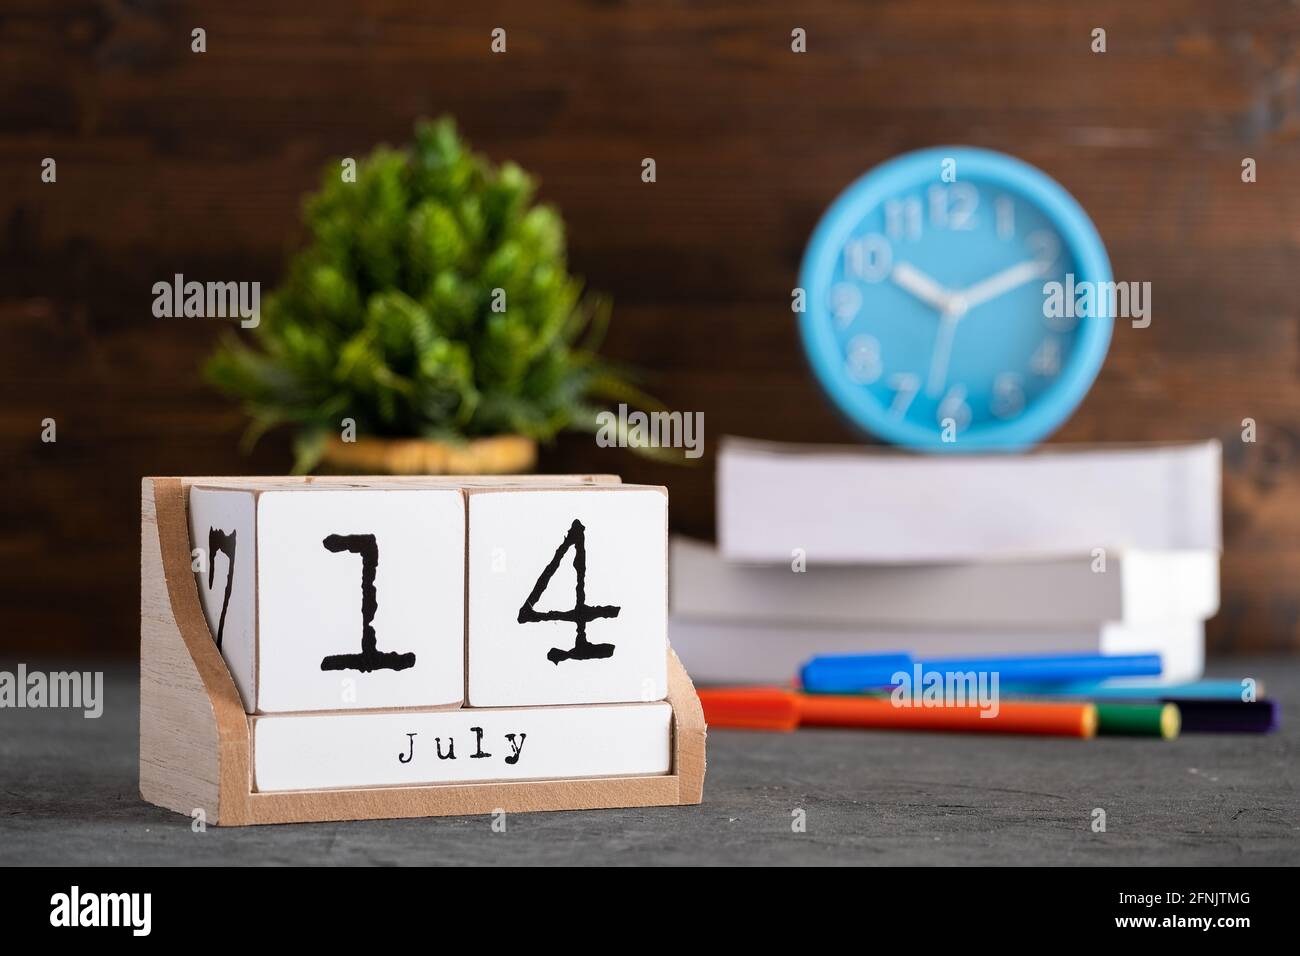 14 juillet. Juillet 14 calendrier cube en bois avec des objets flous sur fond. Banque D'Images